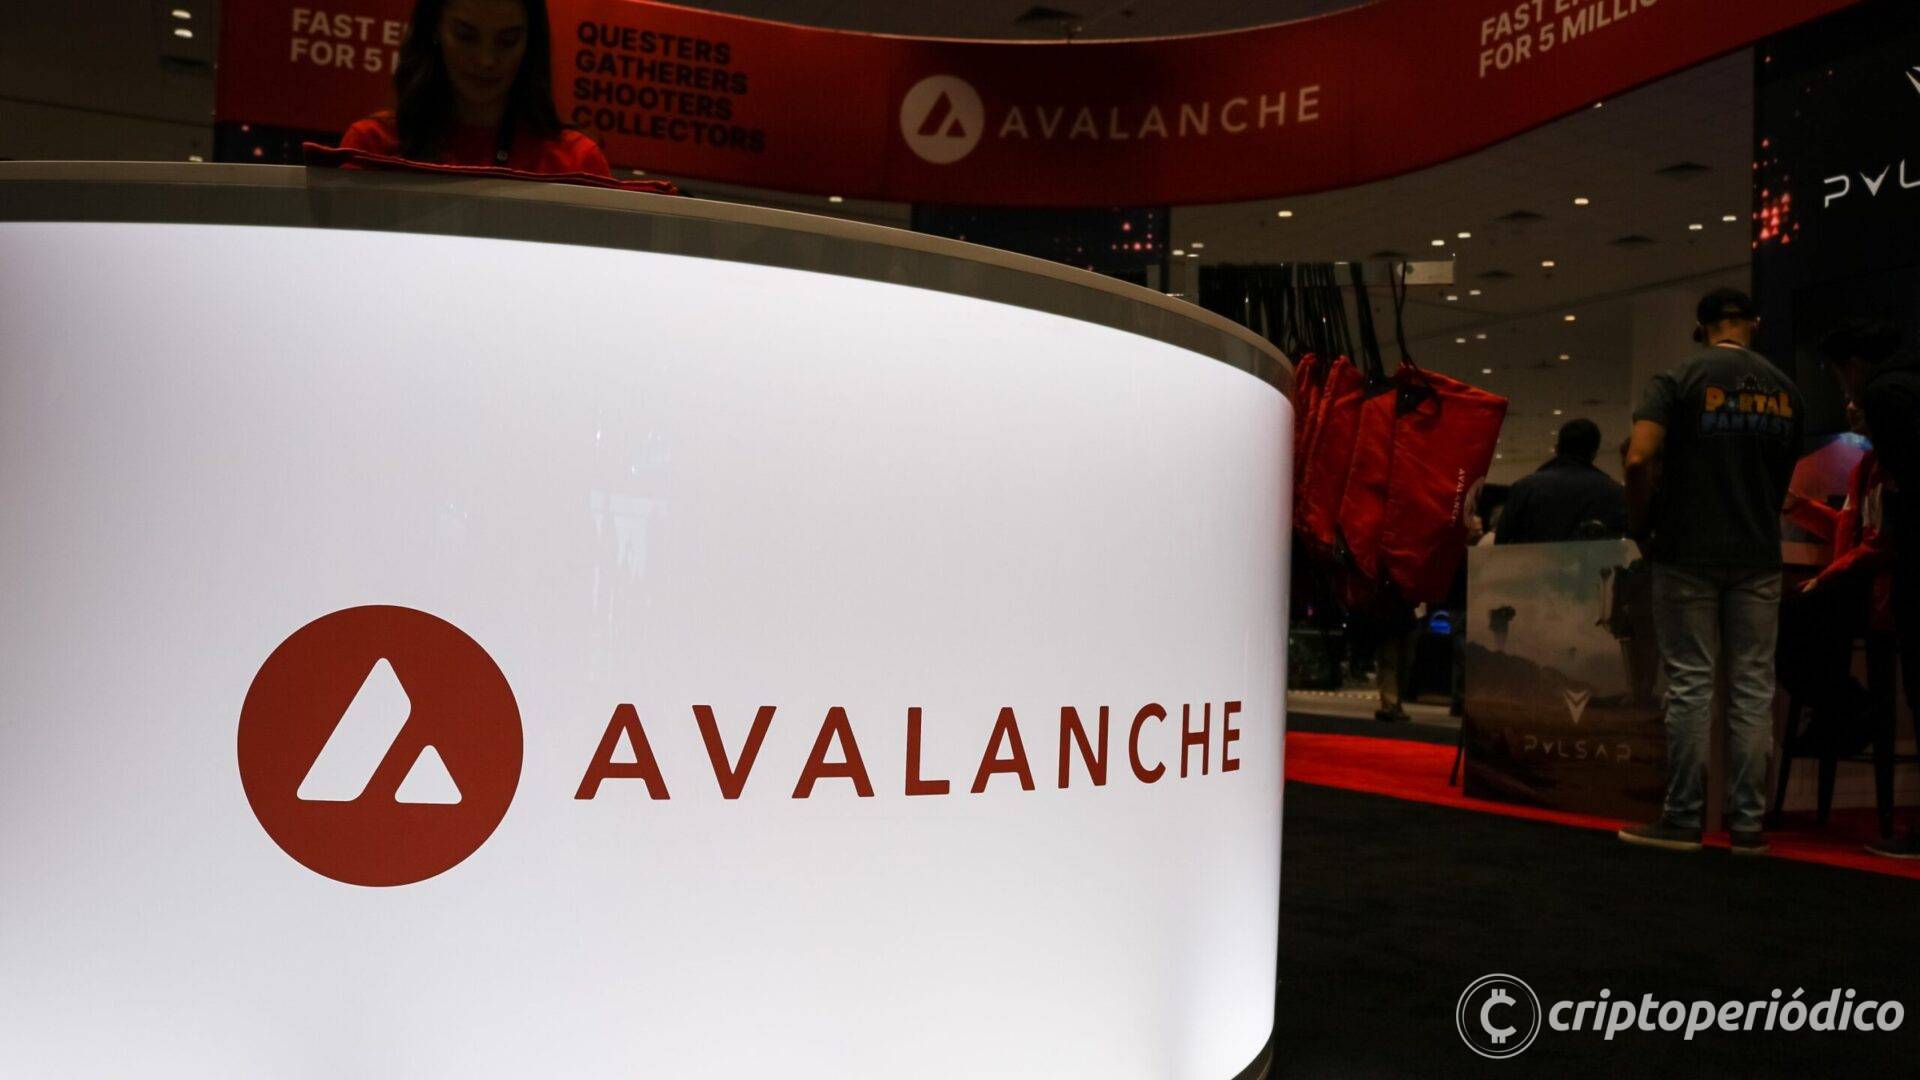 Avalanche se asocia con Pixion Games, facilitando una ronda inicial de $ 5.5 millones para el estudio de juegos web3